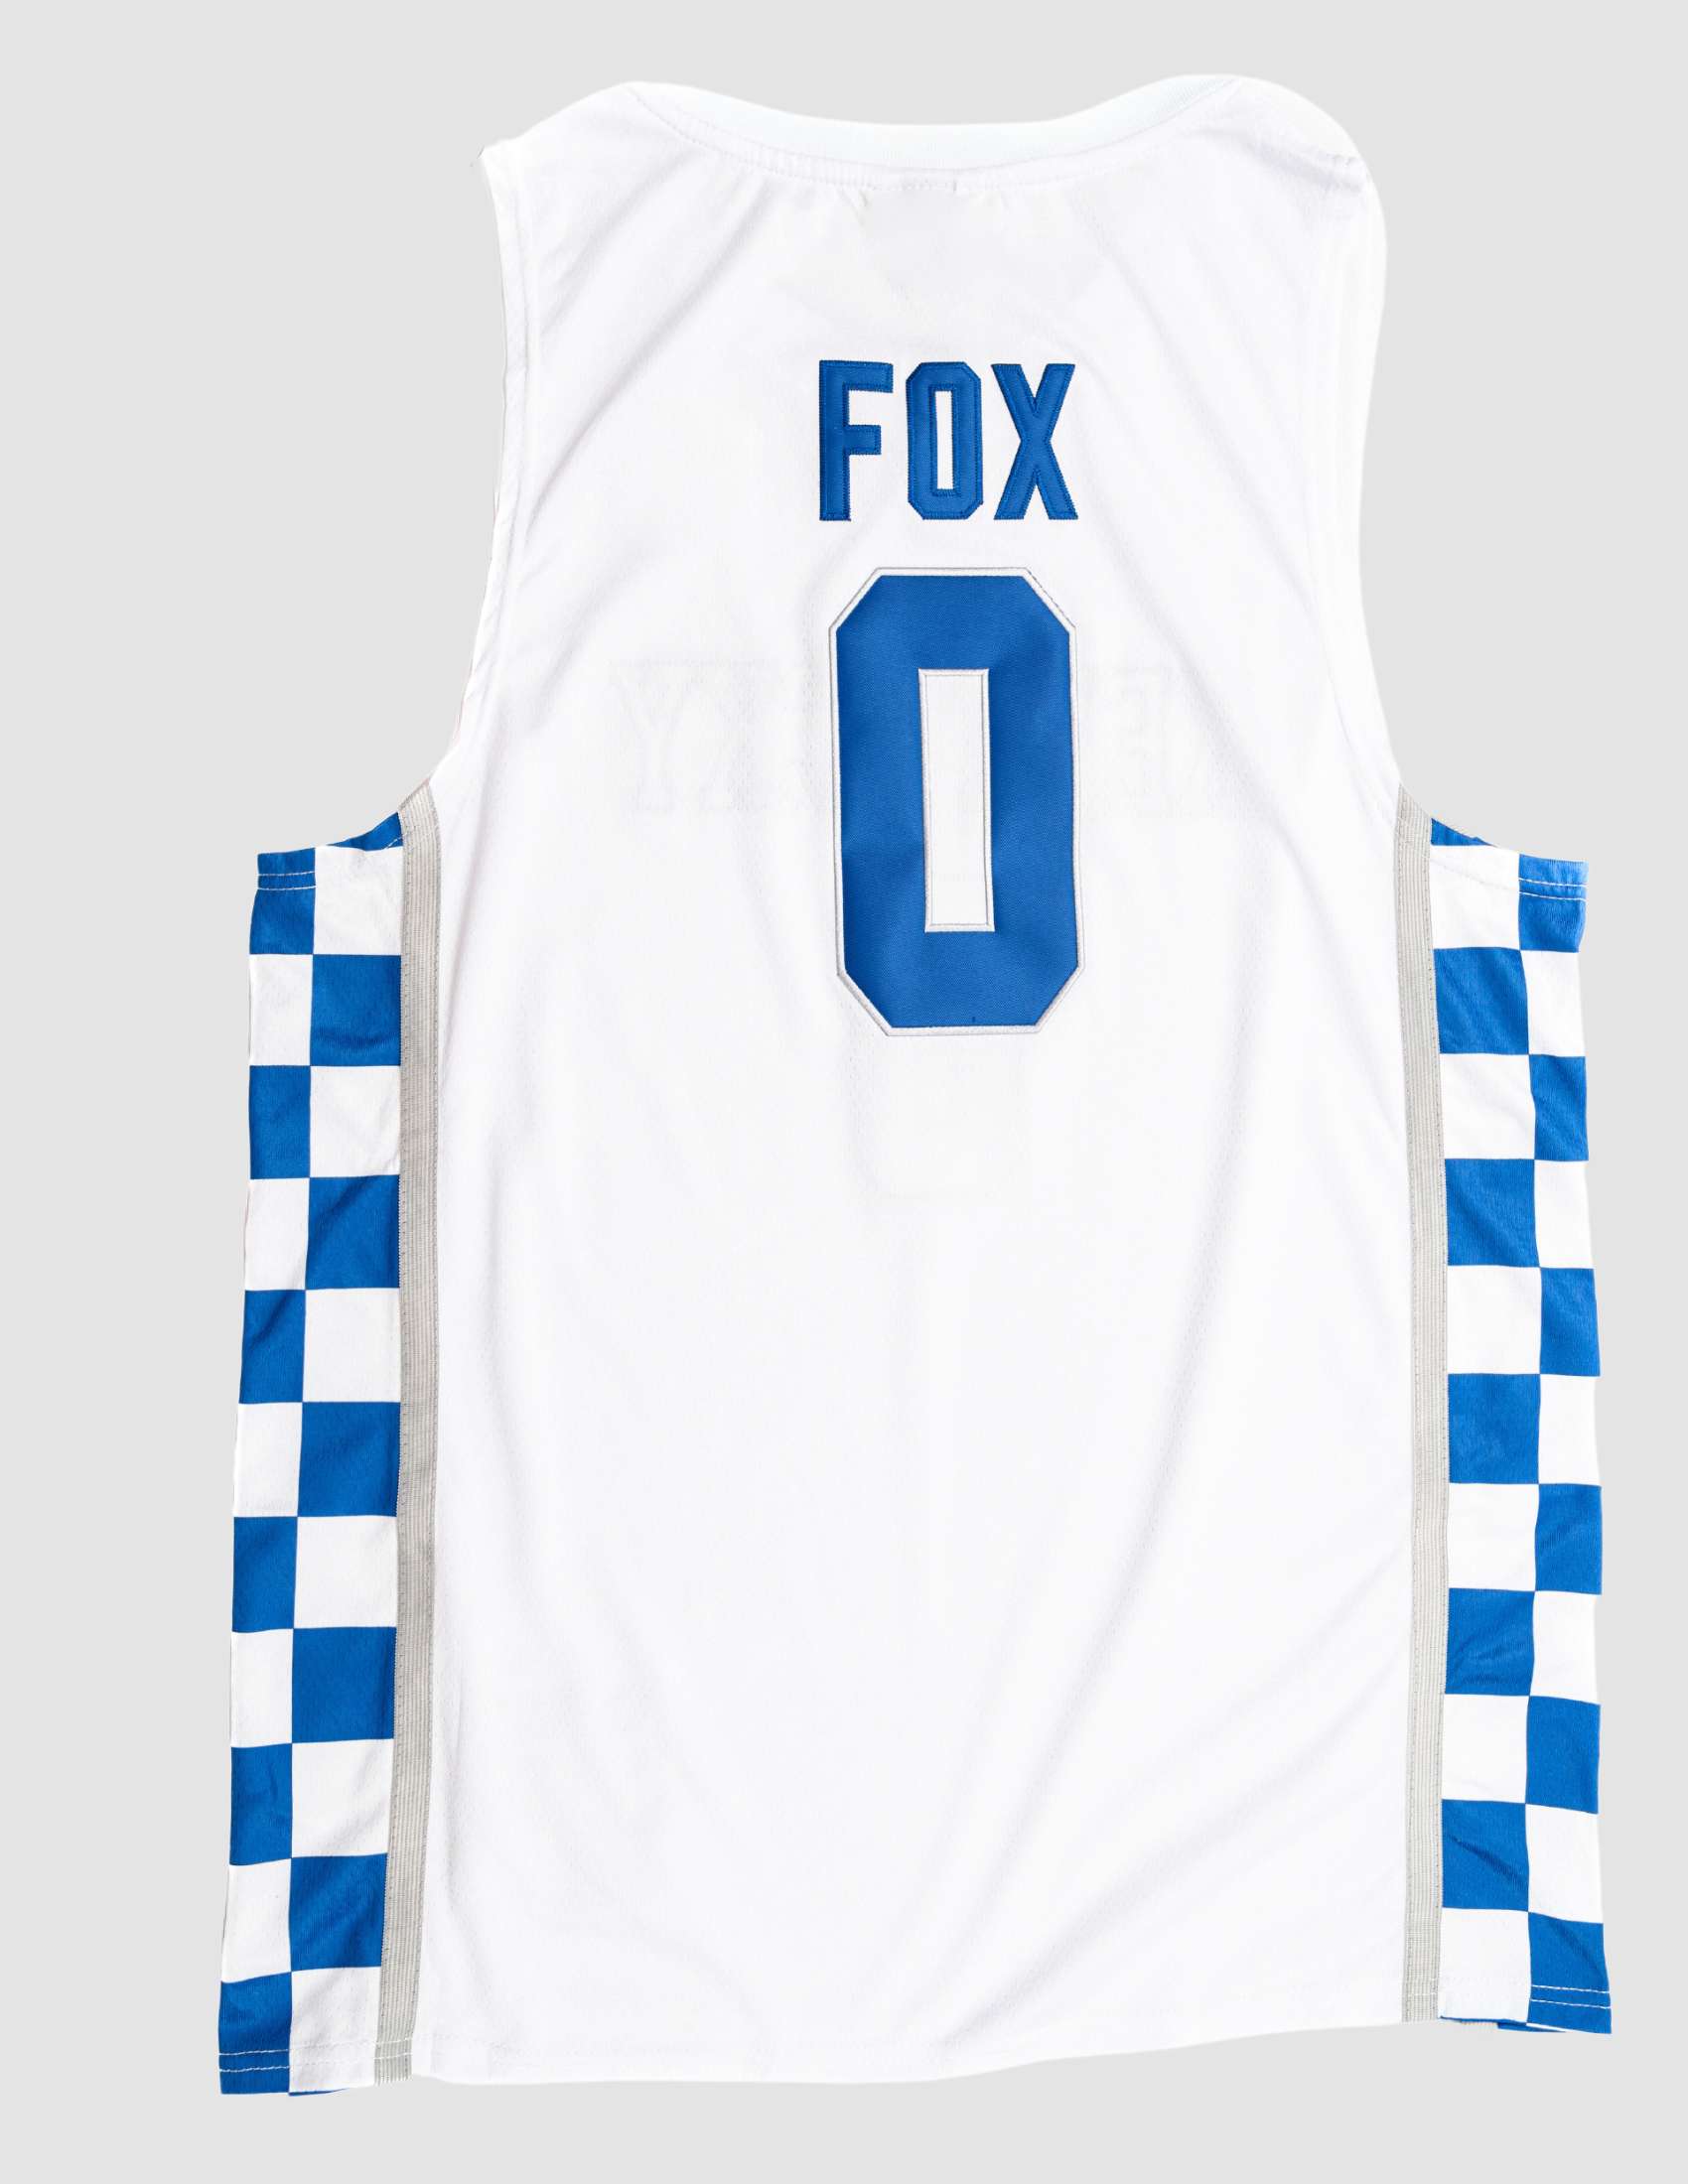 De'Aaron Fox Wildcats fast break jersey